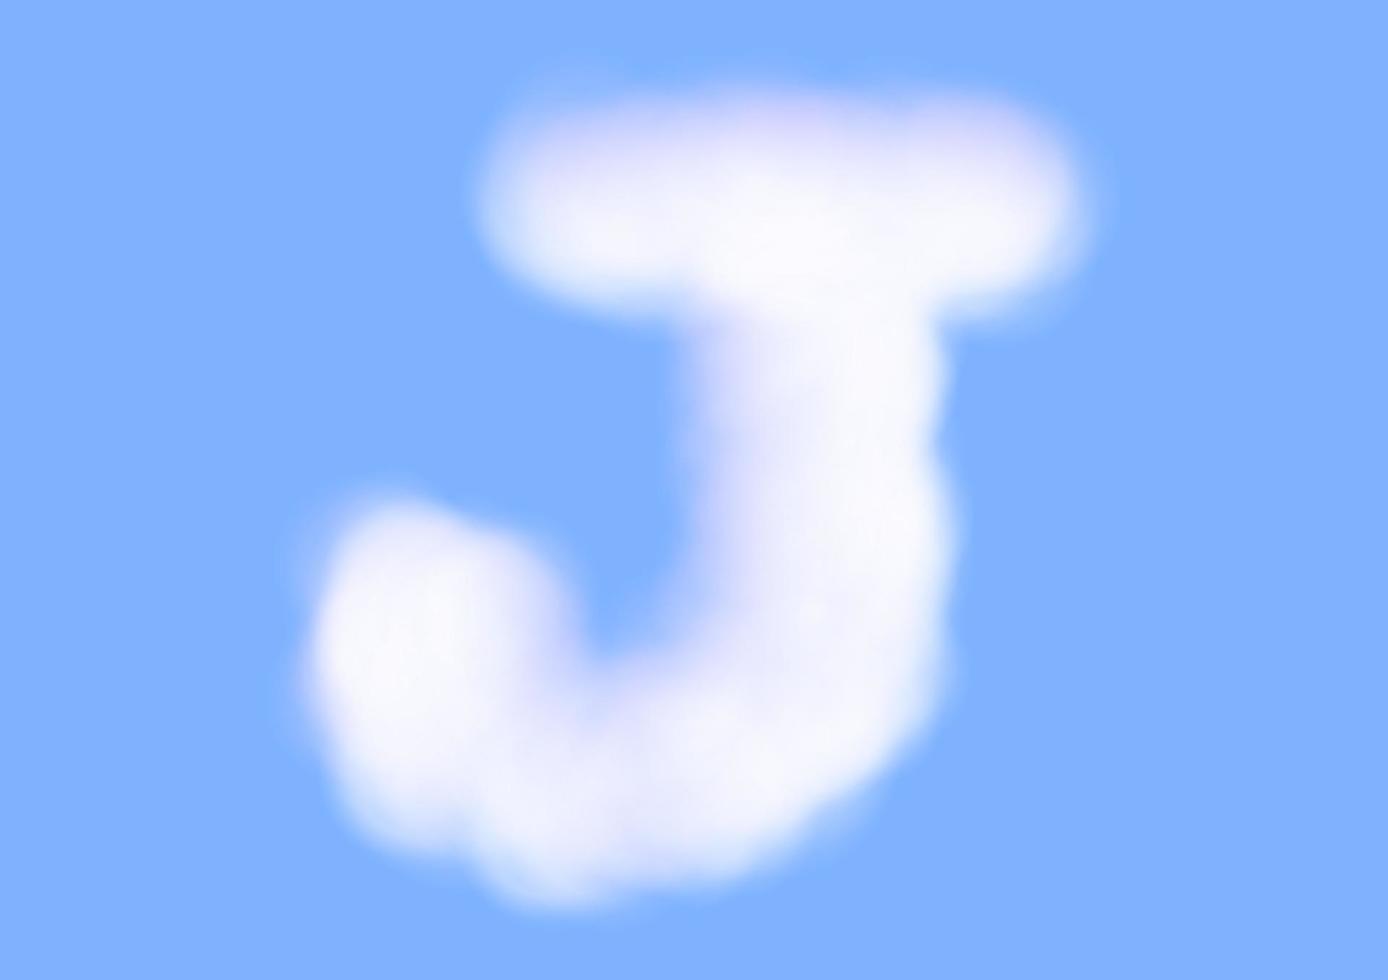 j-Alphabet-Schriftform im Wolkenvektor auf blauem Himmelshintergrund vektor